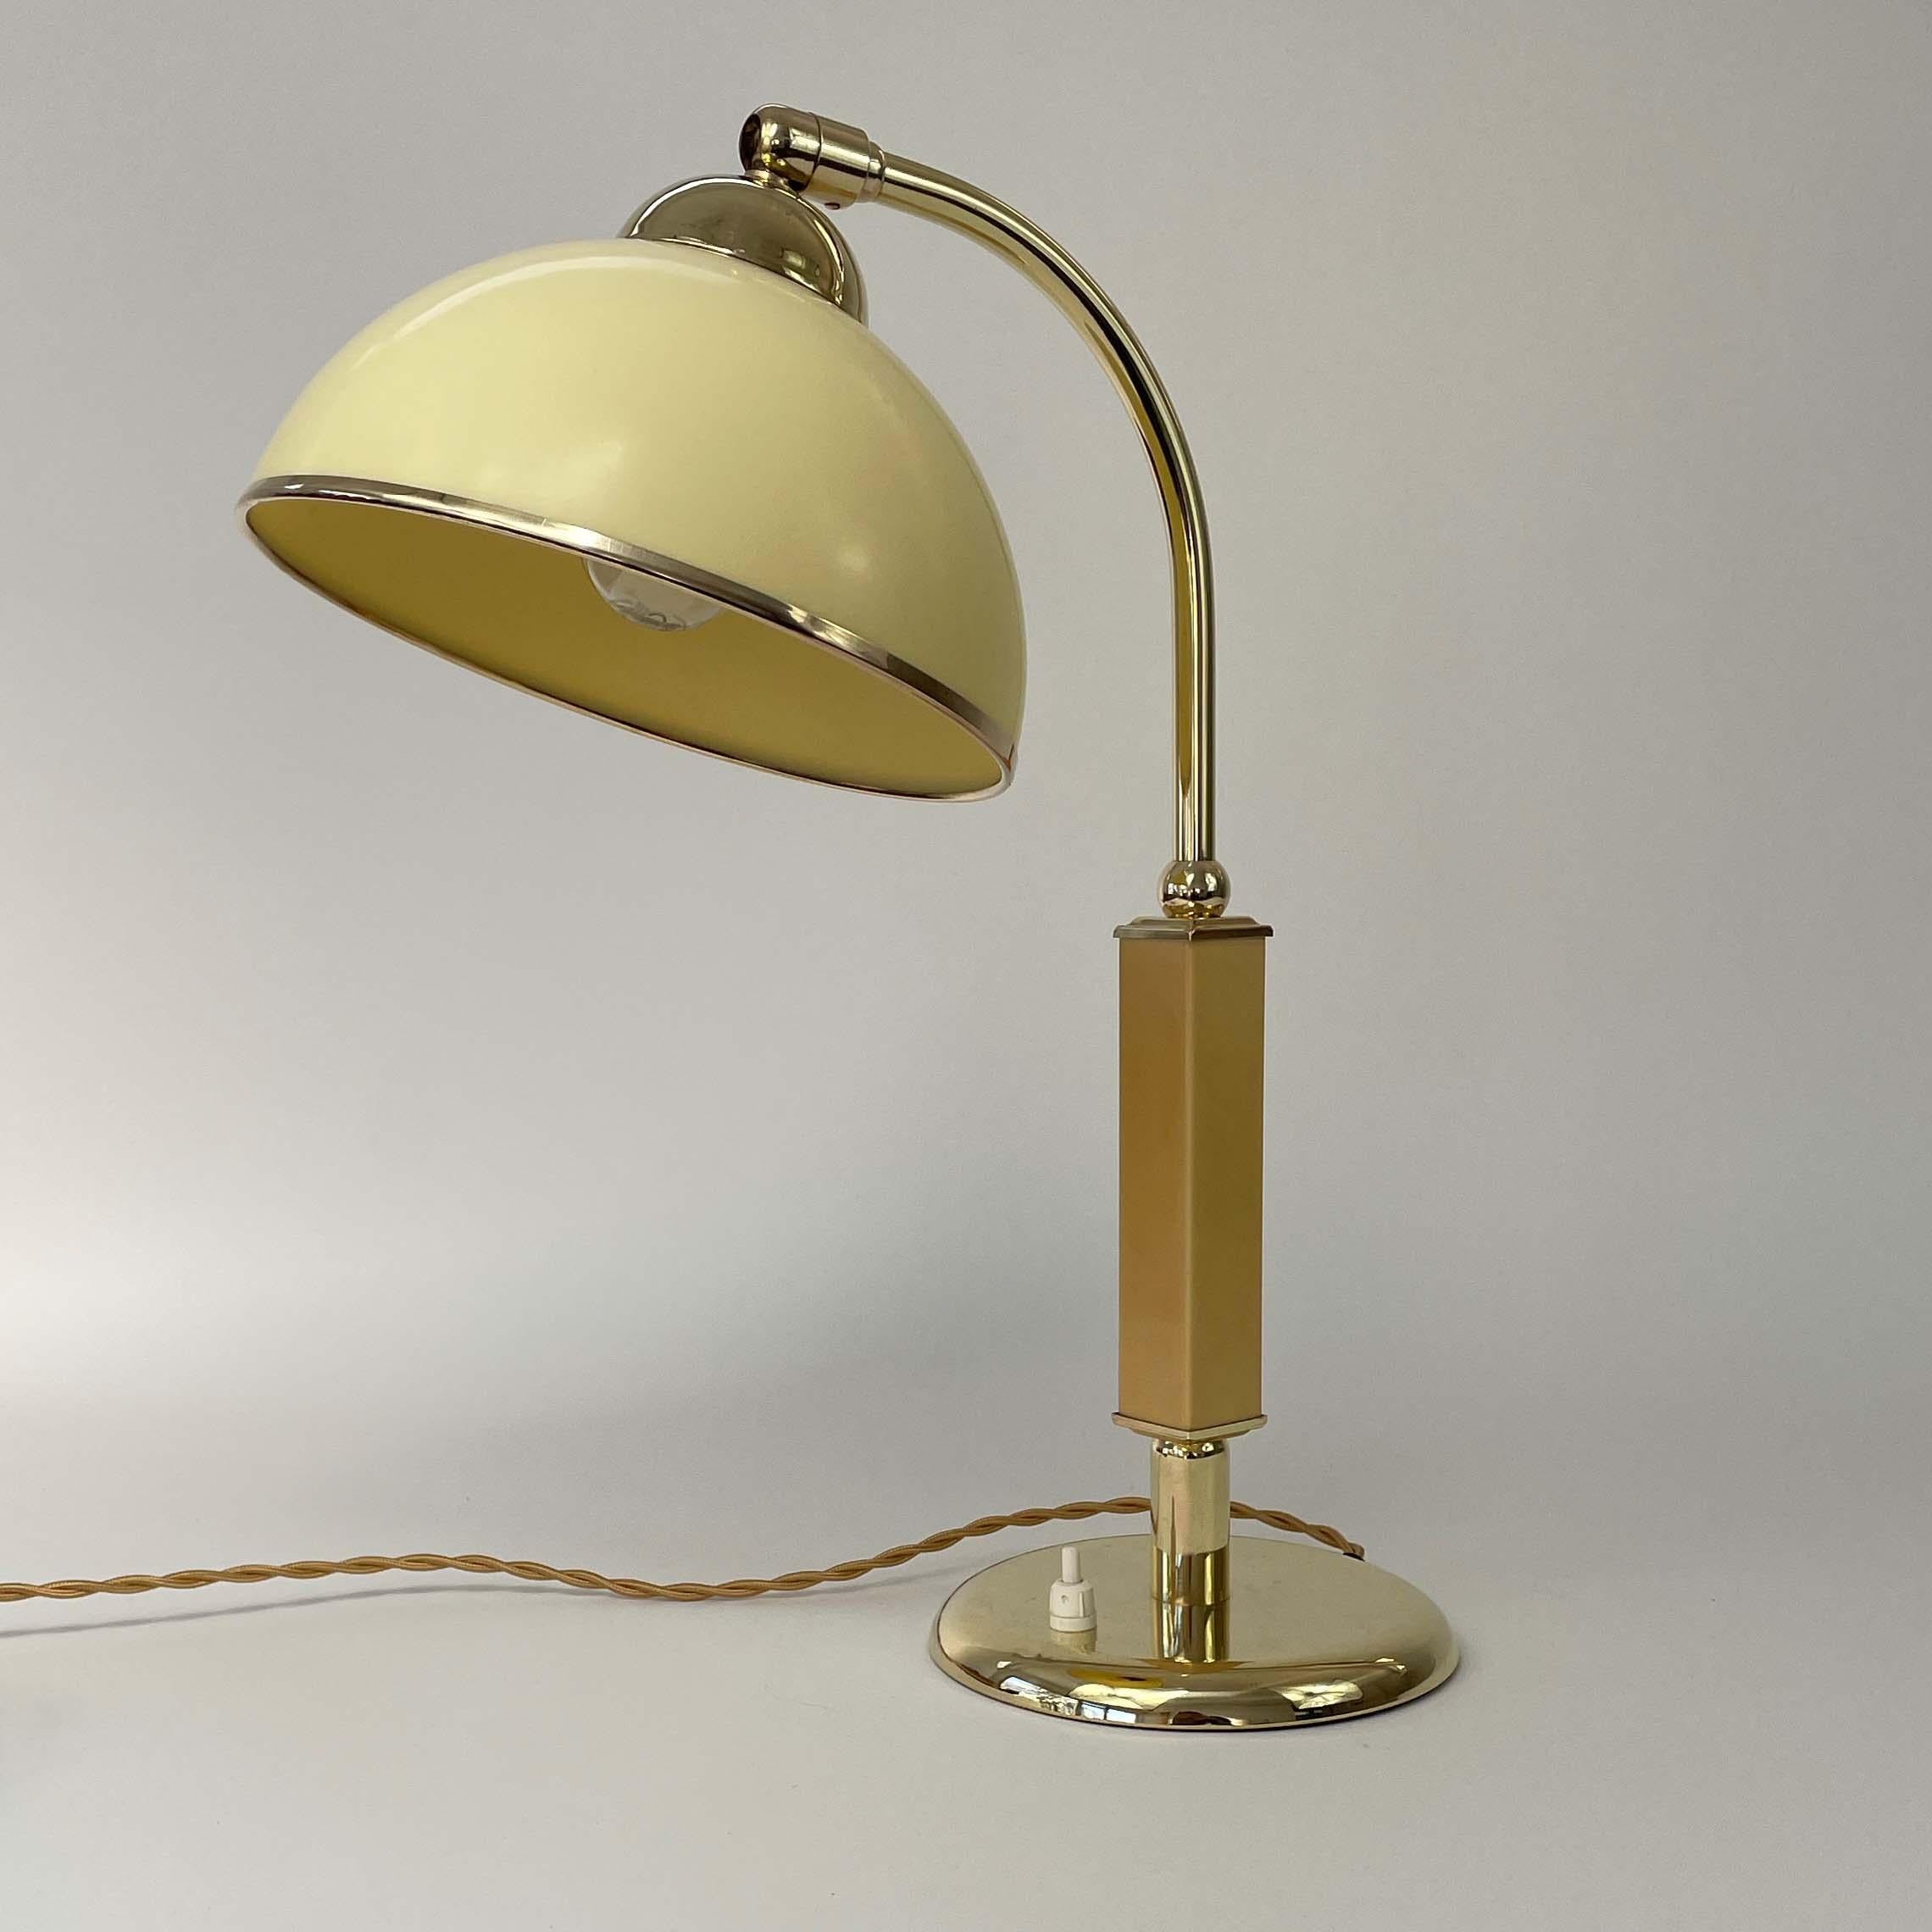 Cette lampe de table vintage inhabituelle a été conçue et fabriquée en Allemagne dans les années 1930, pendant la période du Bauhaus. Elle est composée d'un abat-jour en bakélite de couleur crème foncée en forme de dôme, d'un support de bras de